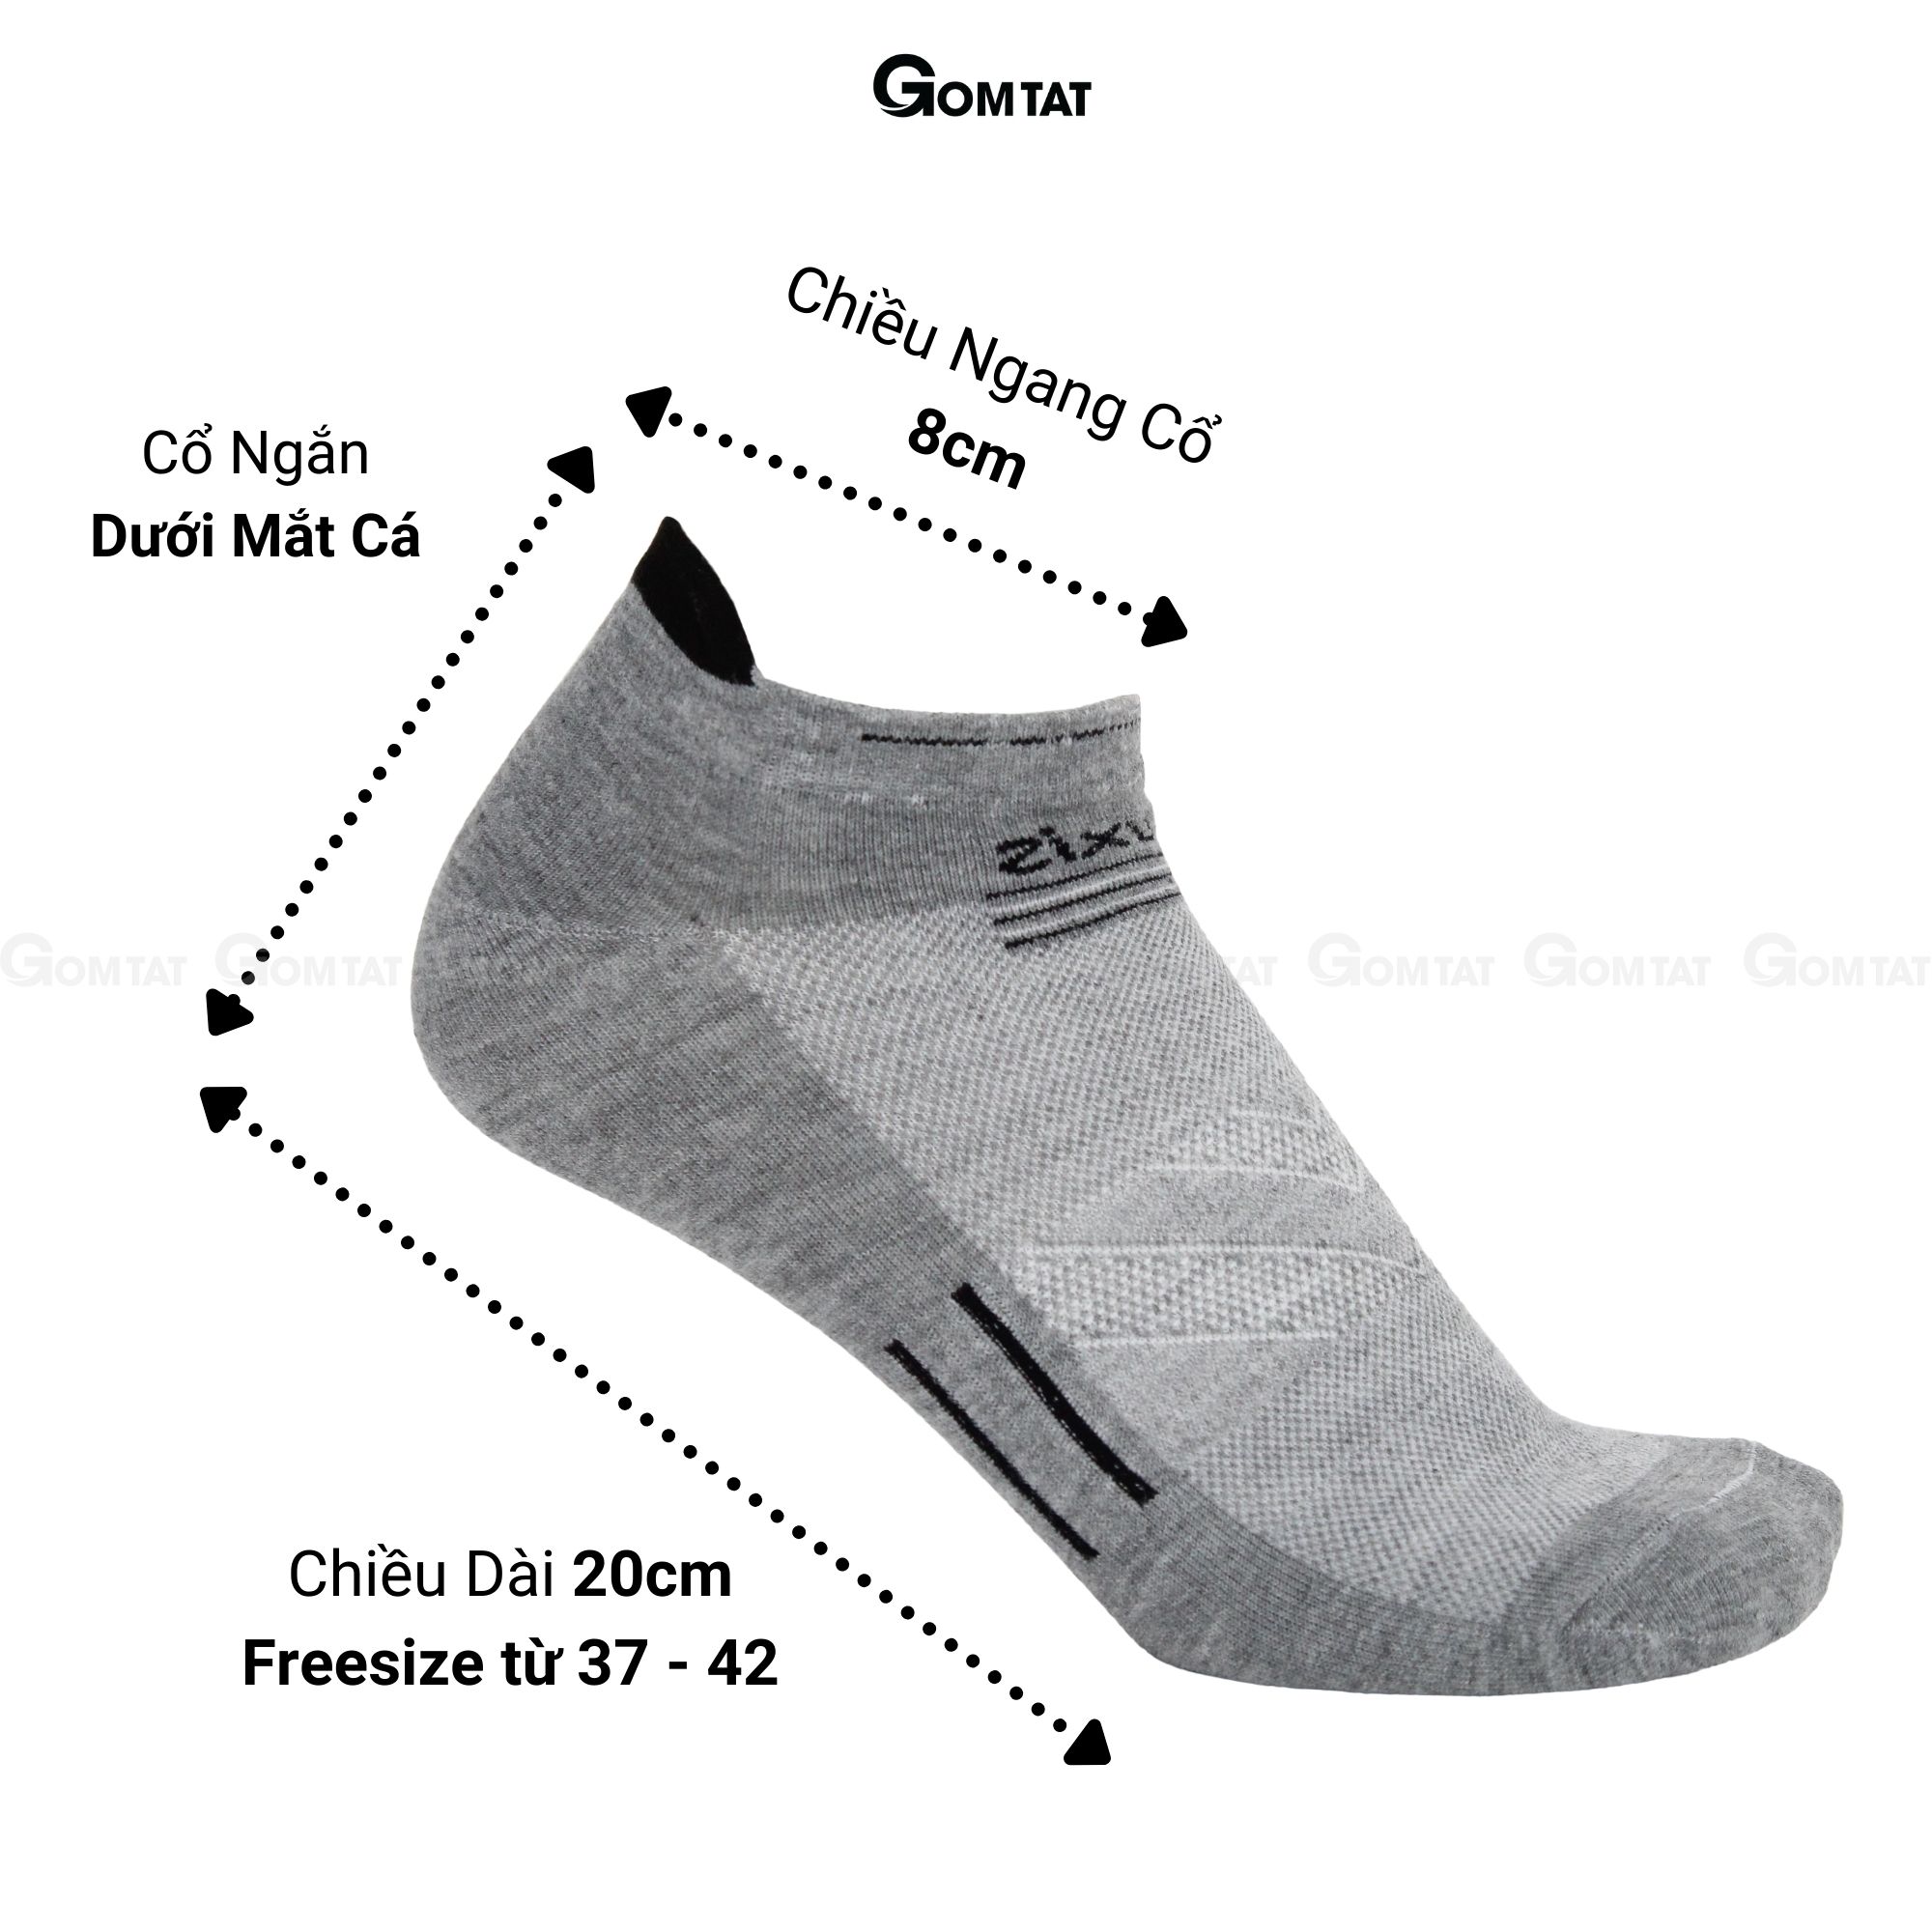 Tất nam cổ ngắn GOMTAT chuyên dùng cho thể thao, chất liệu cotton cao cấp, có đệm bảo vệ gót chân - LUXIS-S16-1DOI